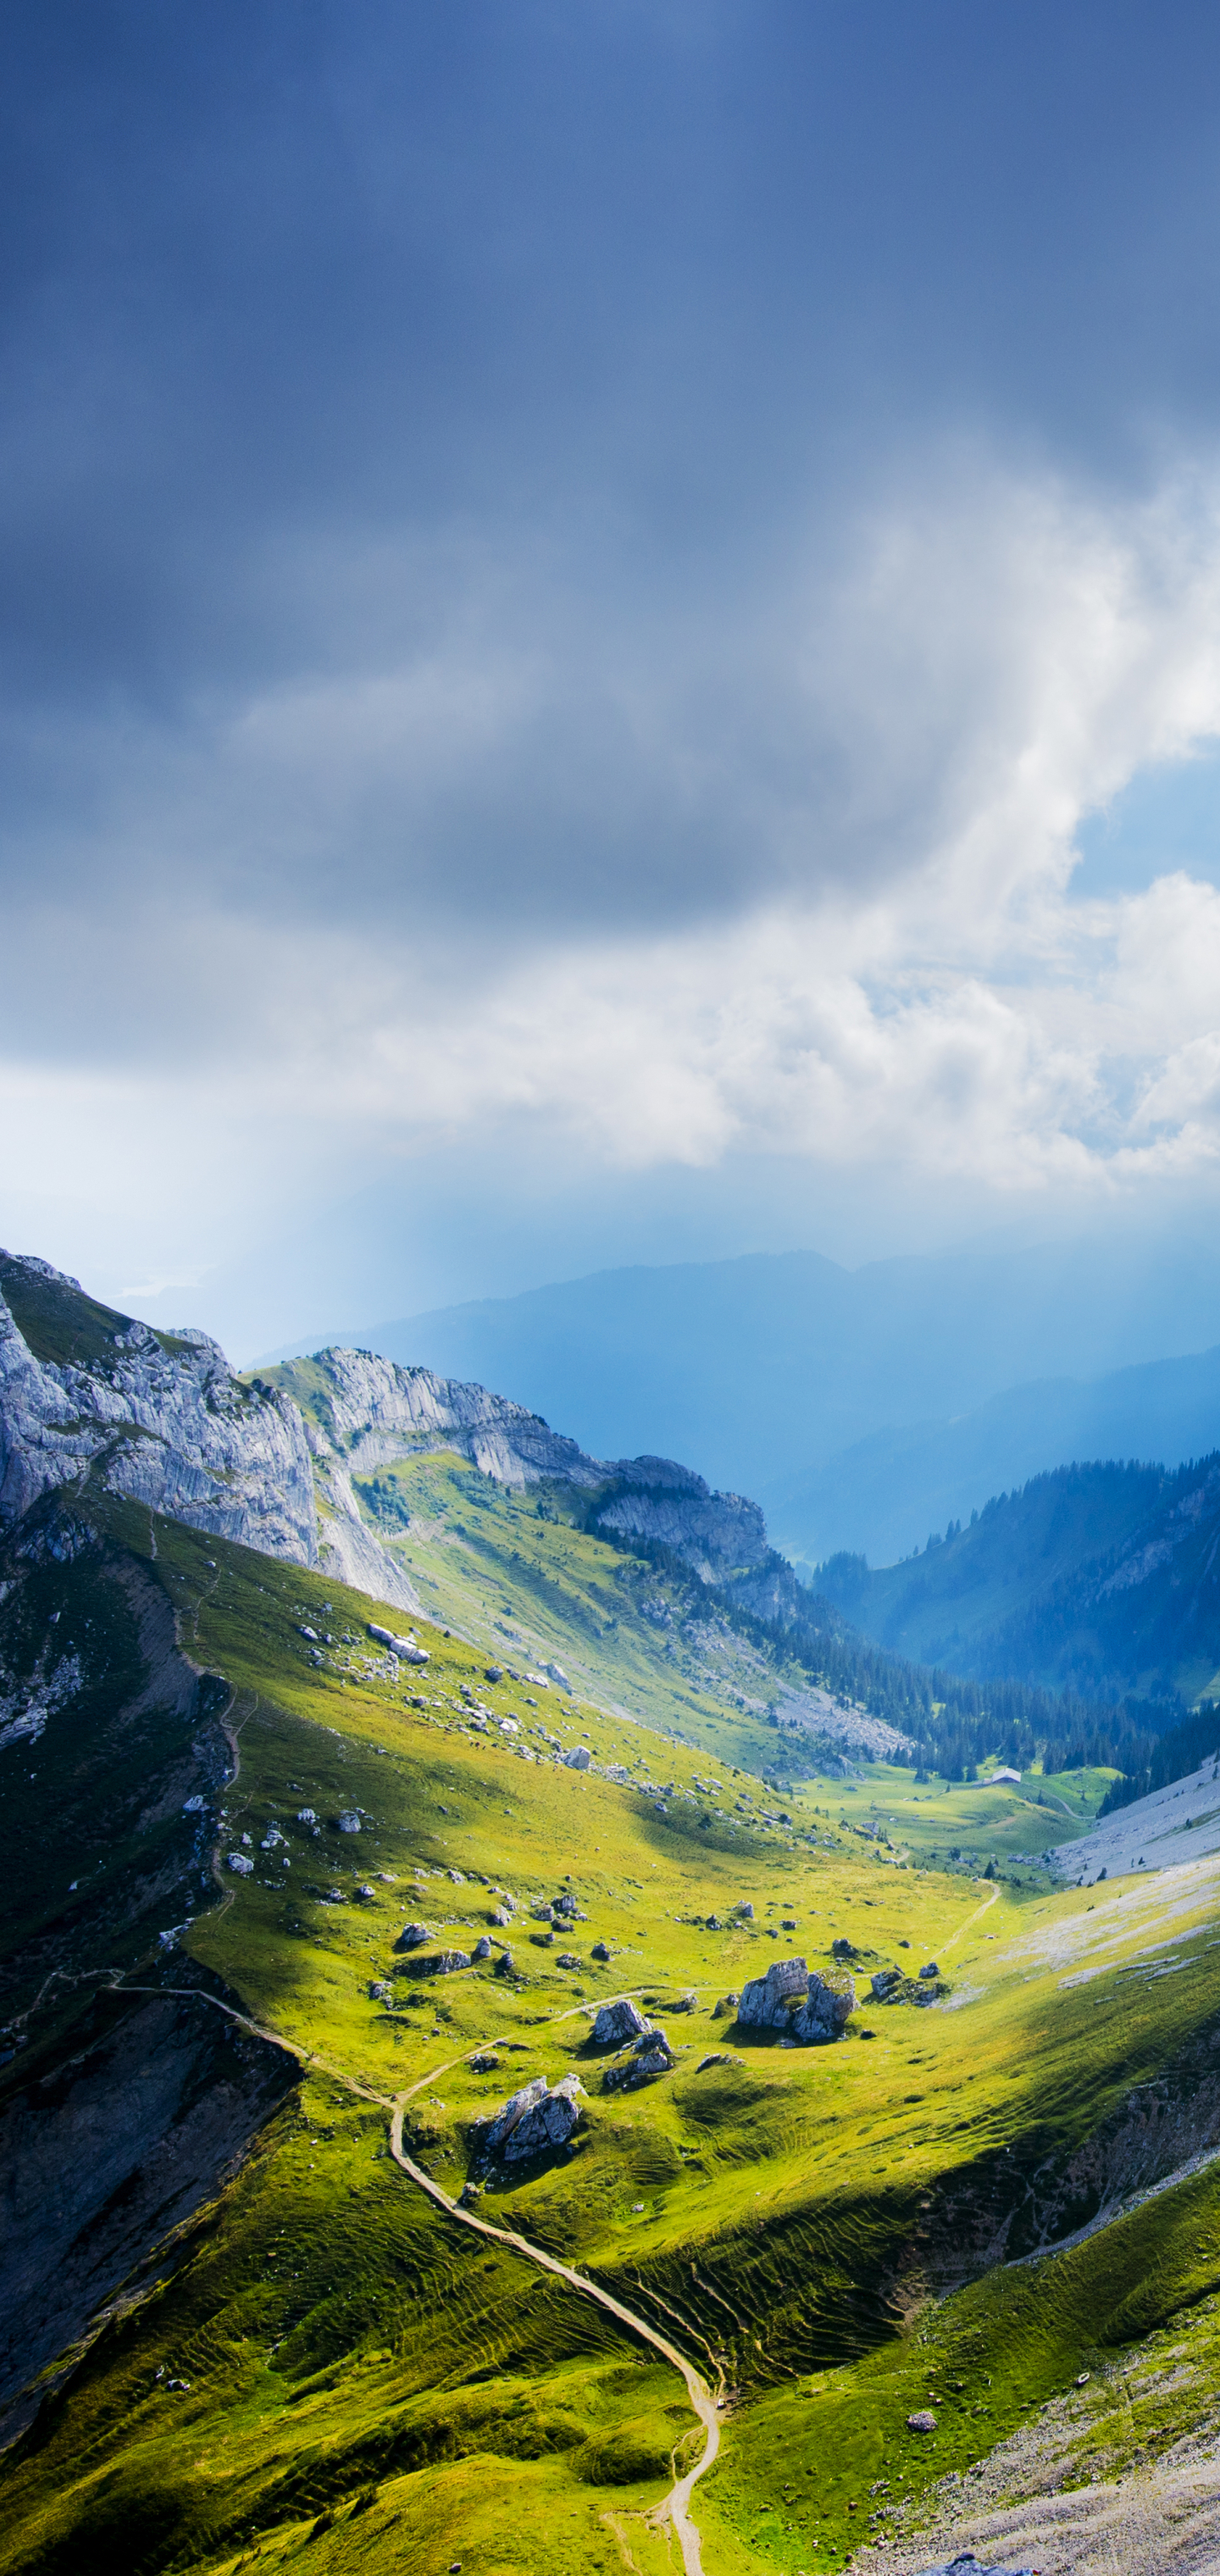 1188449 免費下載壁紙 自然, 皮拉图斯山, 瑞士, 卢塞恩, 山, 景观, 风景, 山脉 屏保和圖片